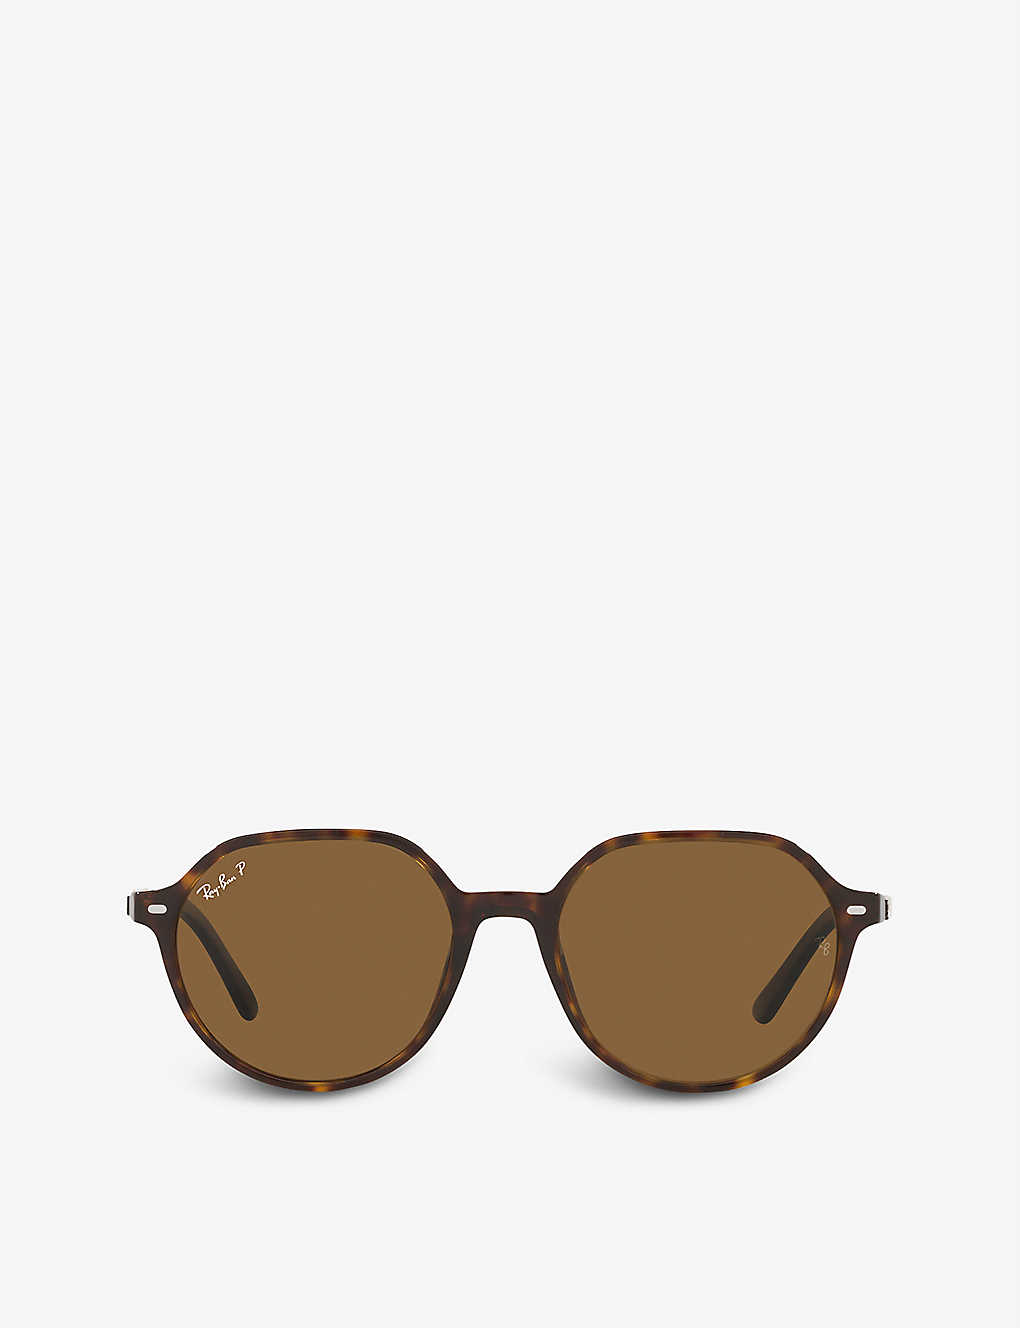 Ray Ban Thalia Sunglasses Tortoise Frame Brown Lenses Polarized 53-18